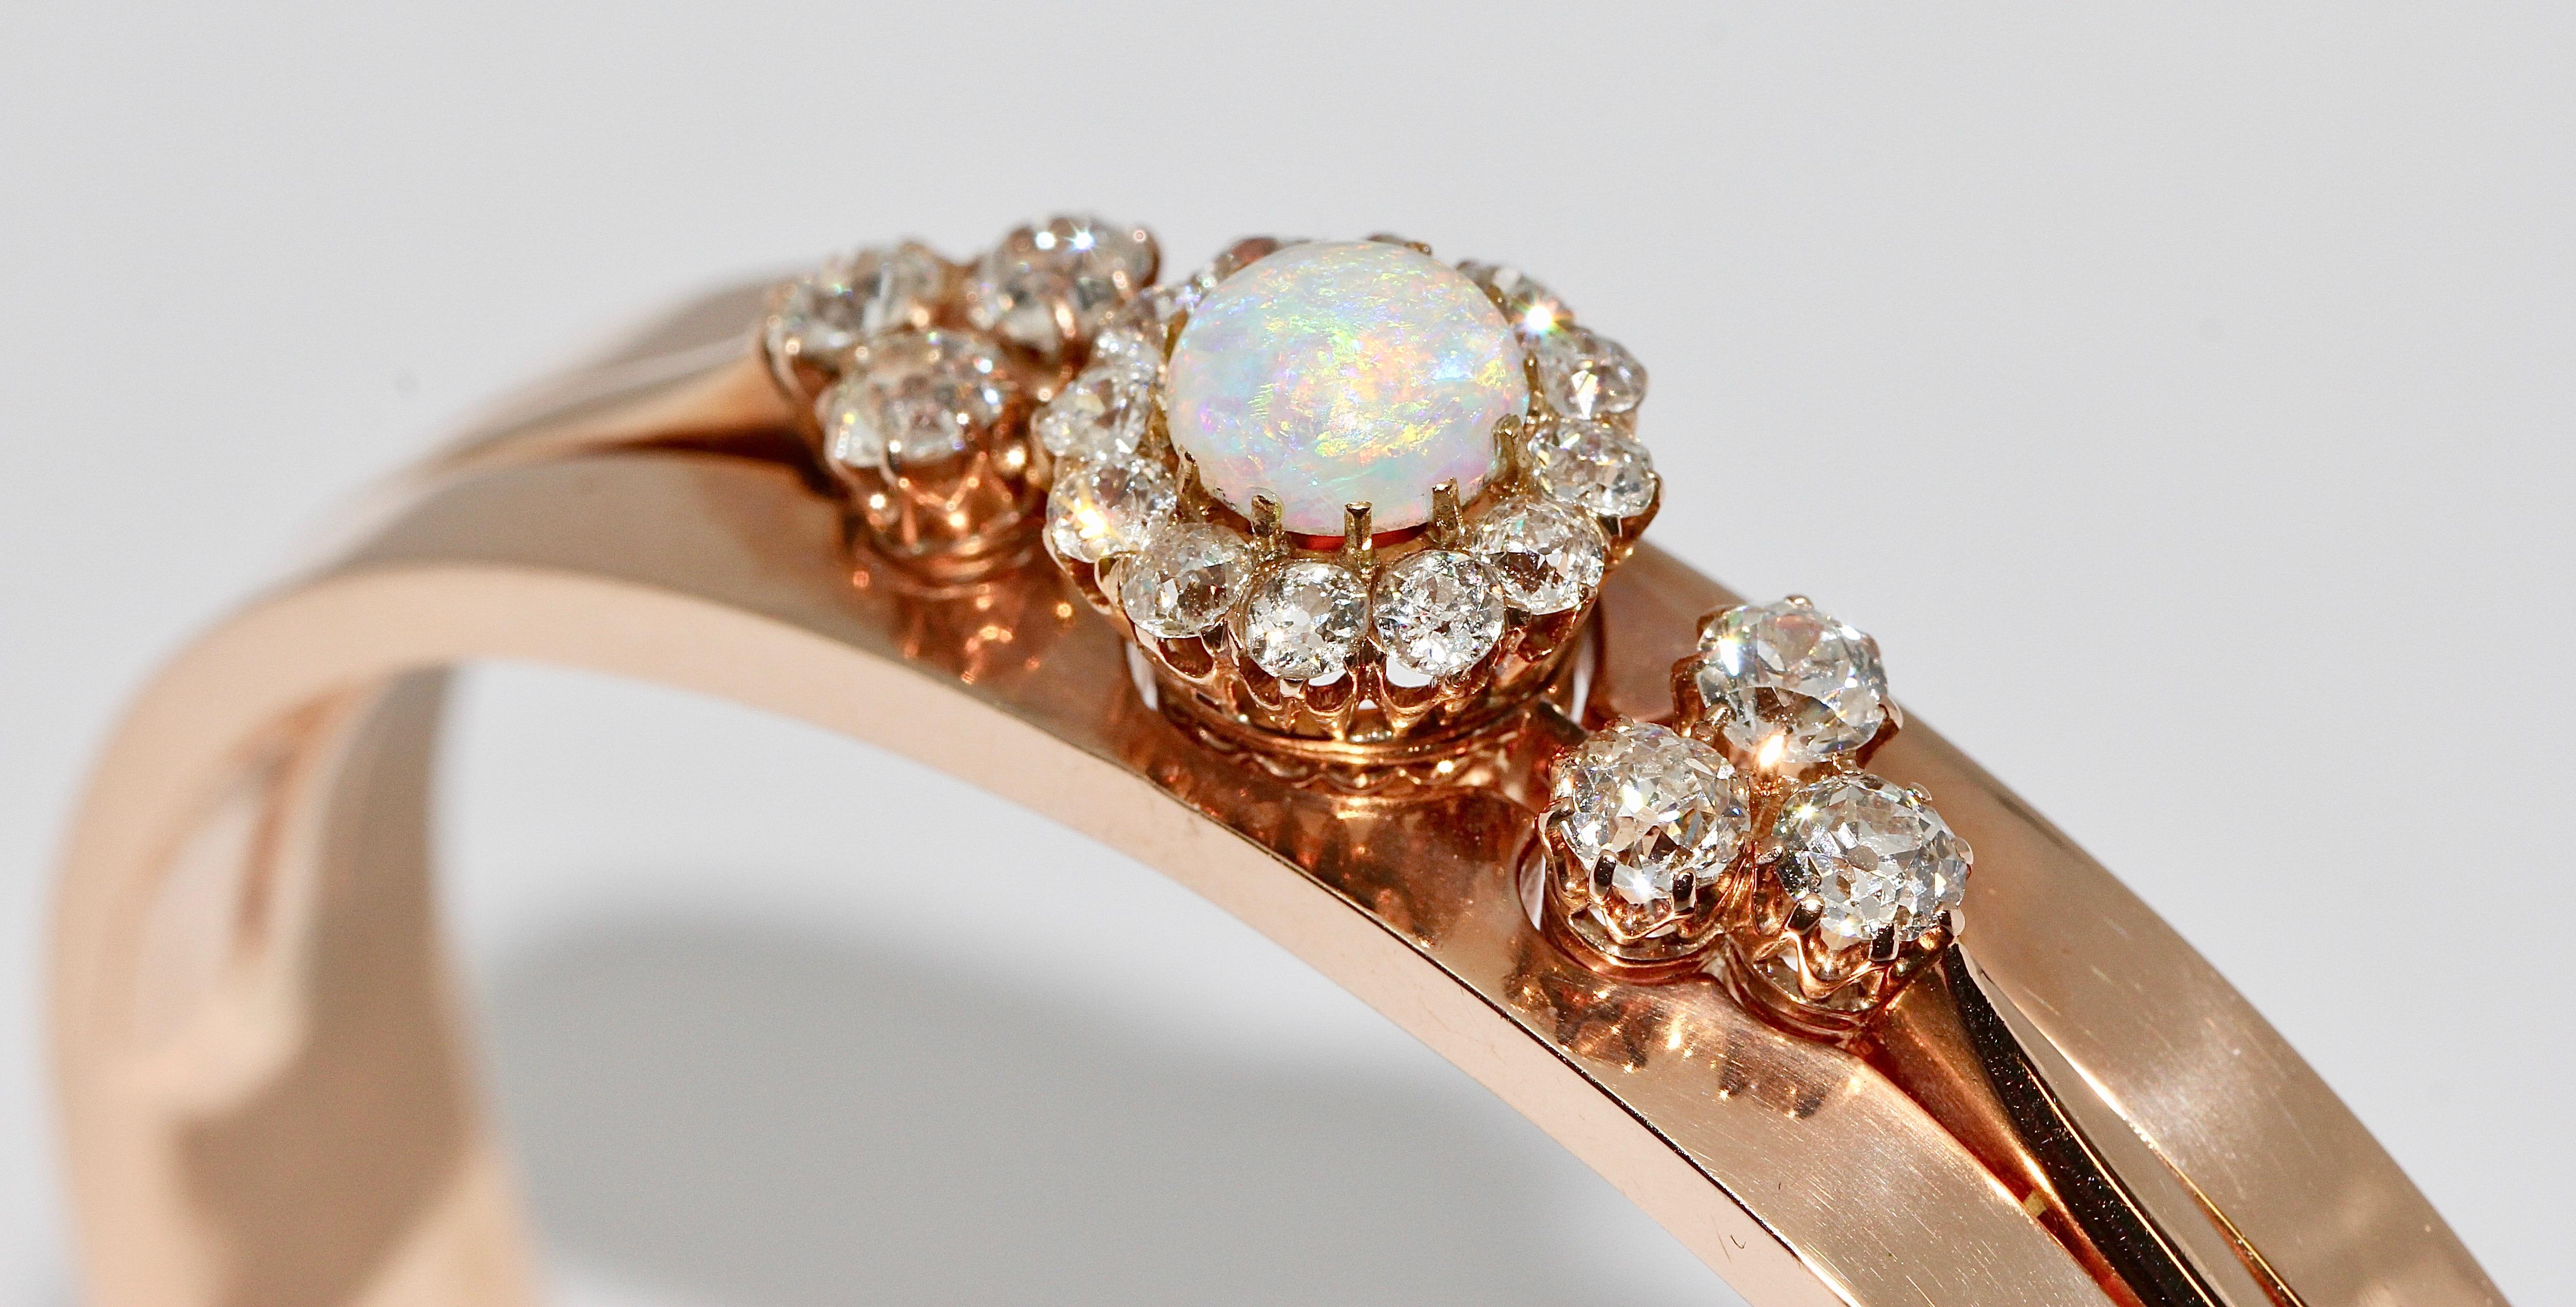 Antique bangle pour dames avec opale précieuse et diamants. or 14 carats.

Magnifique bracelet pour femme, serti d'une Opale Cabouchon (légèrement arrachée à un moment donné) 

et avec :

Six diamants de taille ancienne, ensemble environ 1,07ct
12